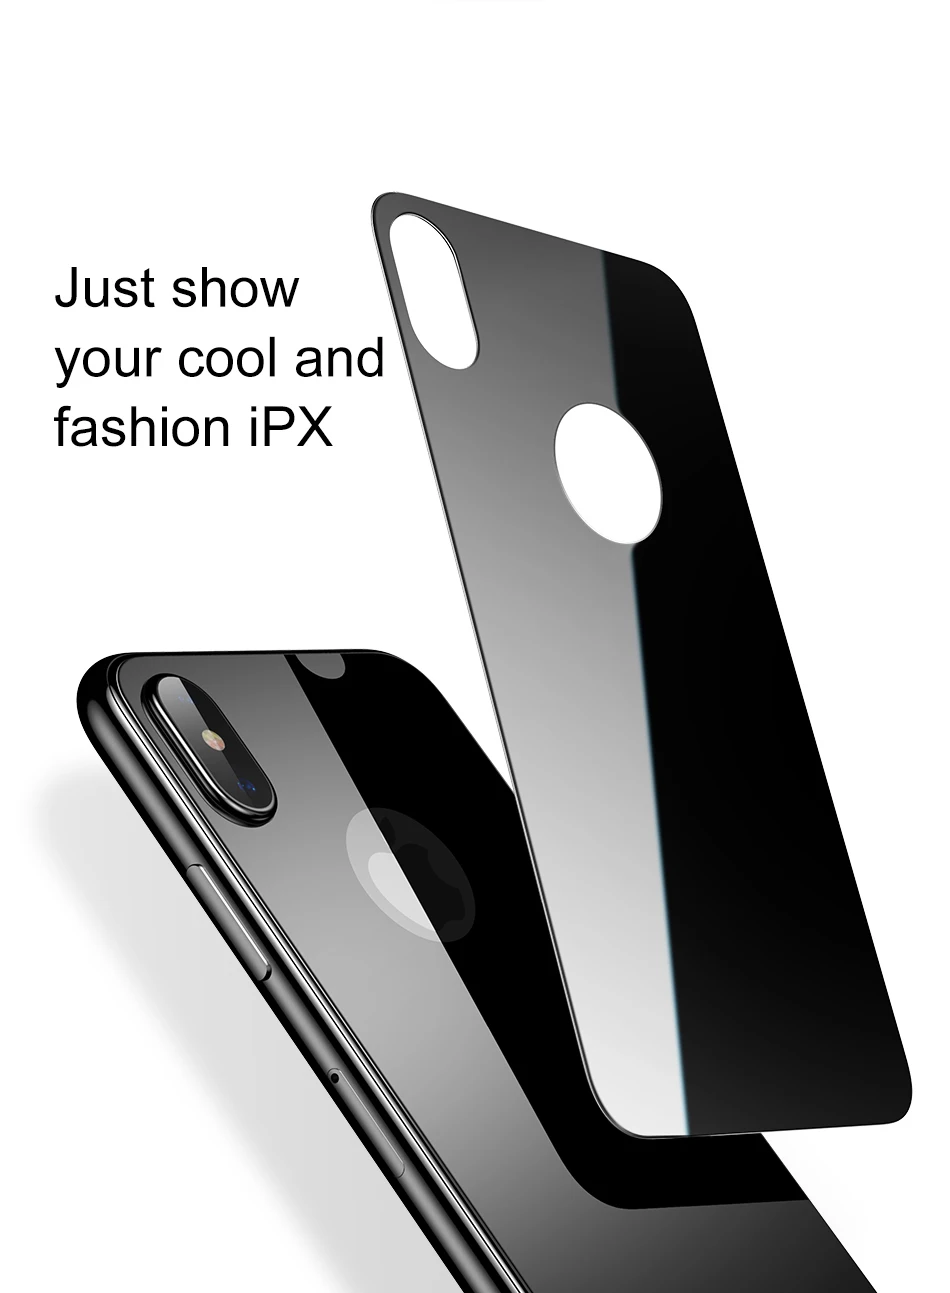 Baseus 0,3 мм защитная пленка на заднюю панель для iPhone X 9 H, закаленное стекло для iPhone X, ультратонкая защитная пленка на заднюю панель